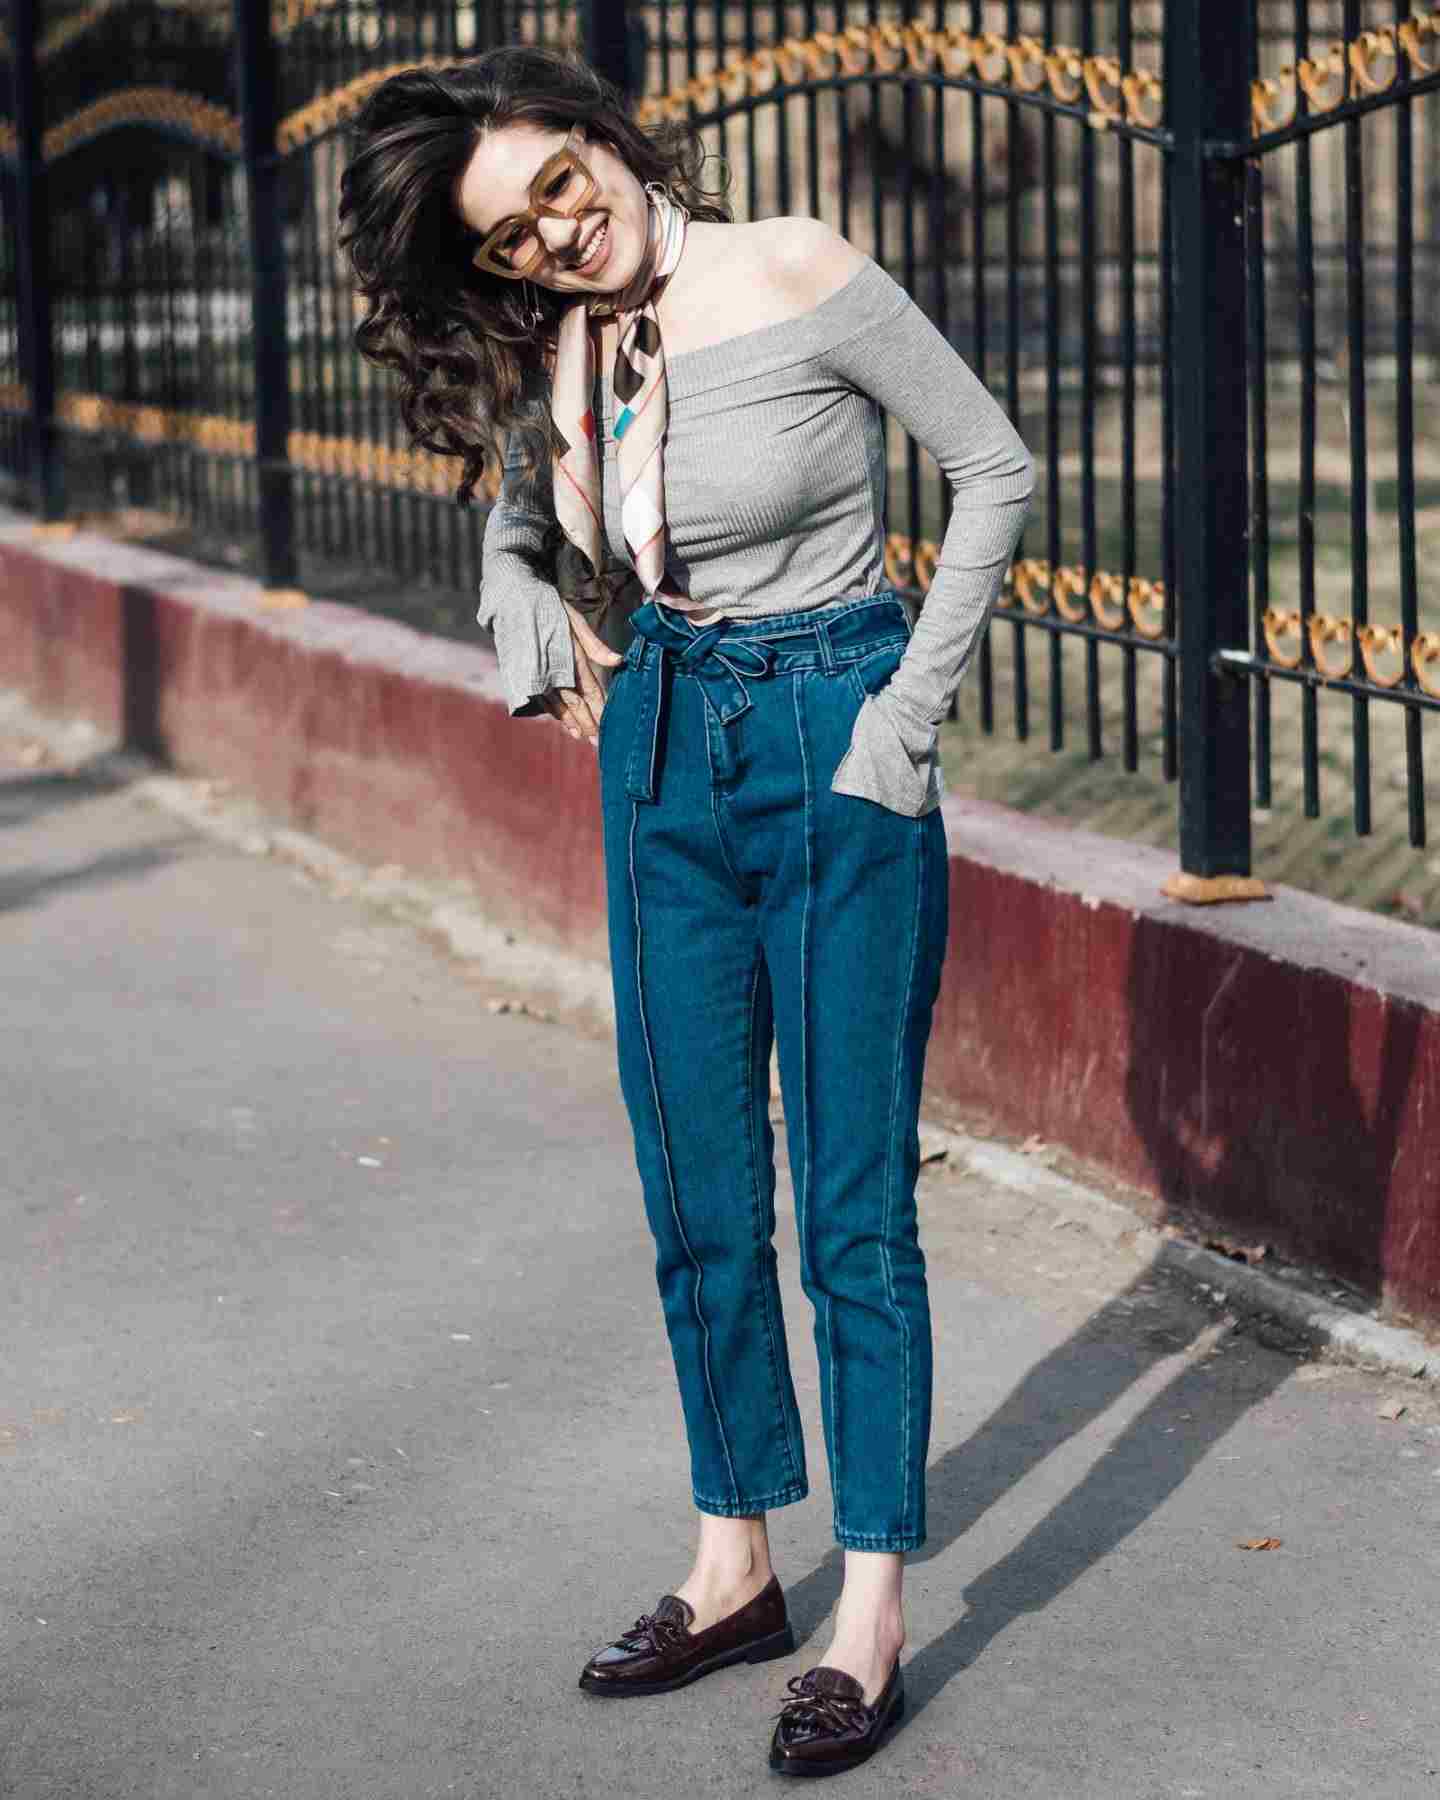 Os jeans da mamãe combinam lenço com ombro e cabelo castanho, tendências da moda feminina